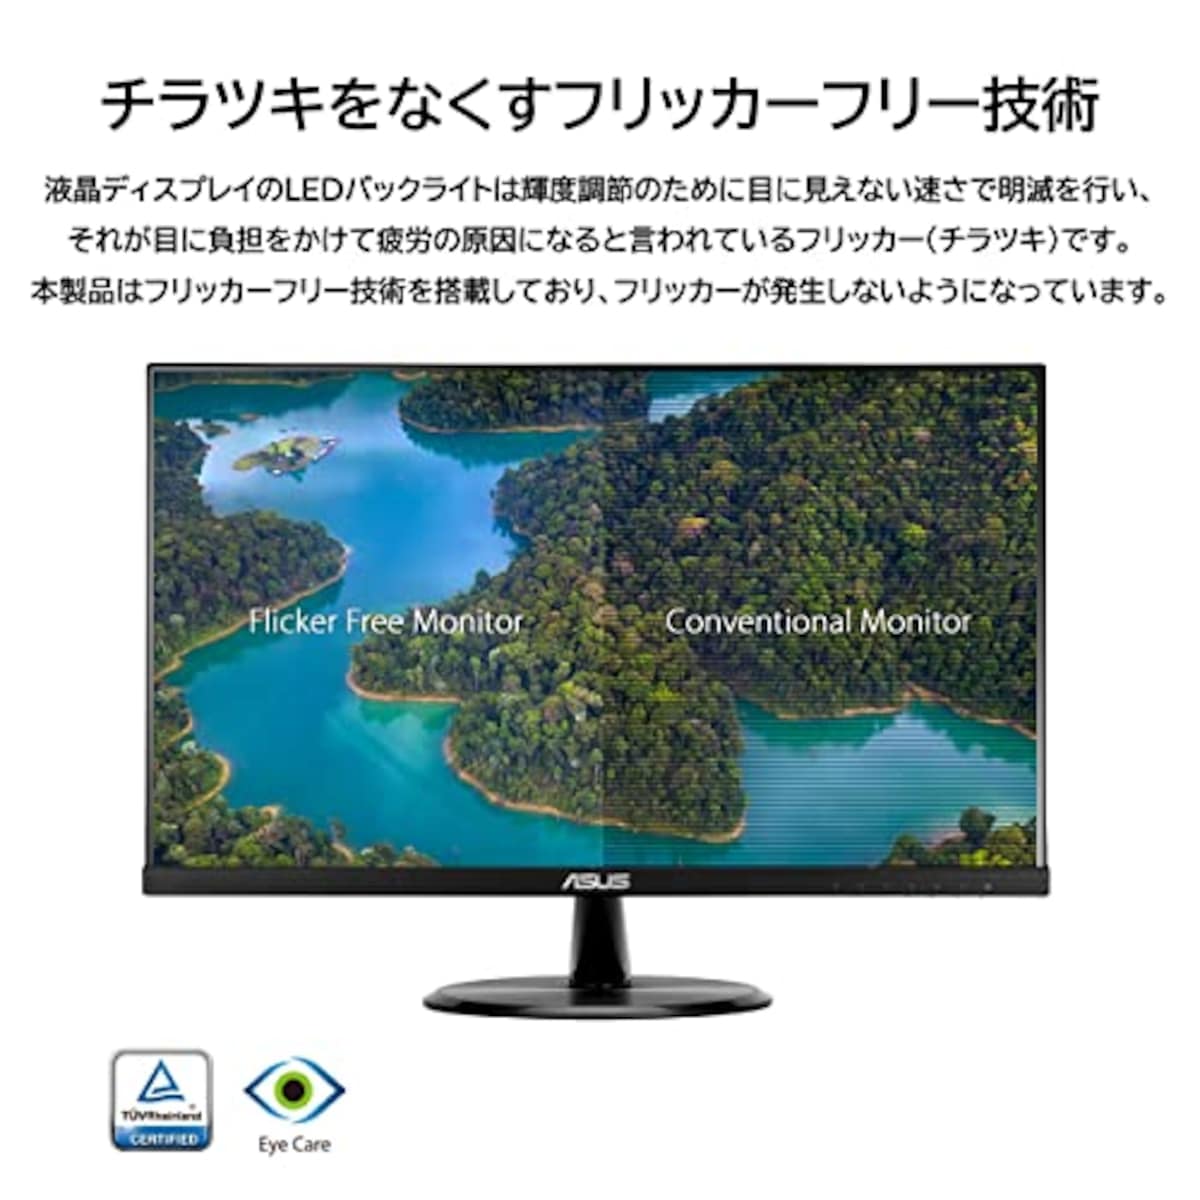  【Amazon.co.jp限定】 ASUS ゲーミングモニター 75Hz 23.8インチ モニター IPS FHD 1ms HDMI1.4(x2) スピーカー VP249HV画像6 